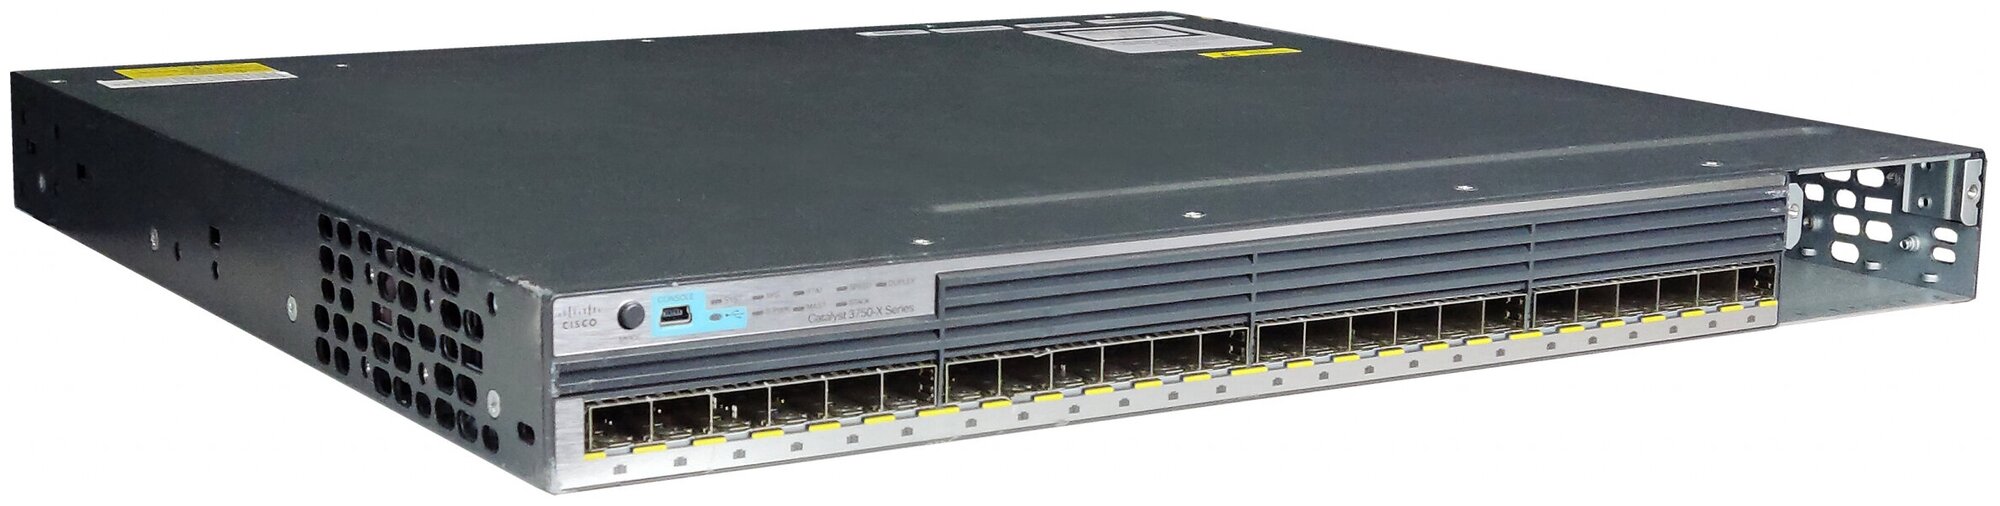 Коммутаторы Cisco WS-C3750X-24S-E